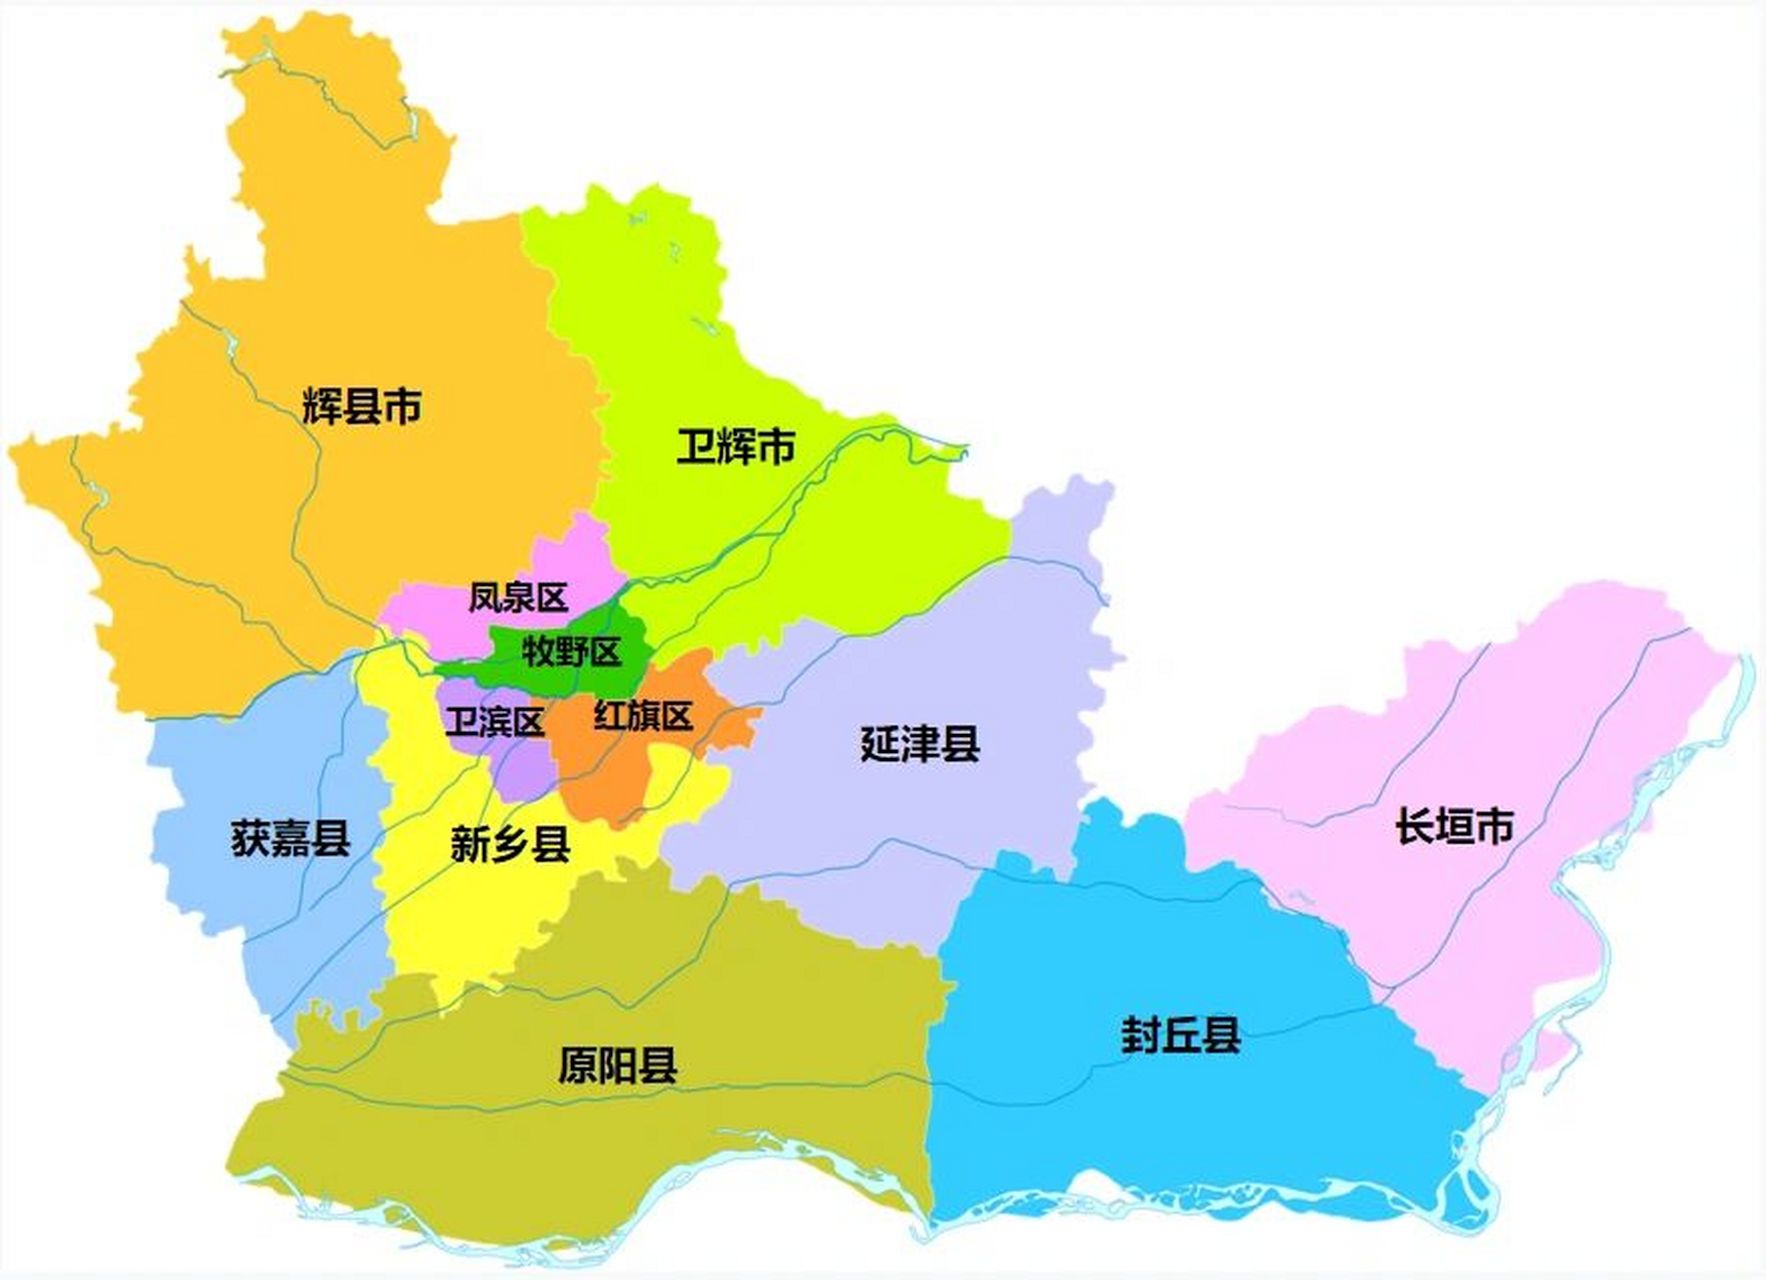 新乡全市划分为 4个区:卫滨区,红旗区,牧野区,凤泉区; 5个县:新乡